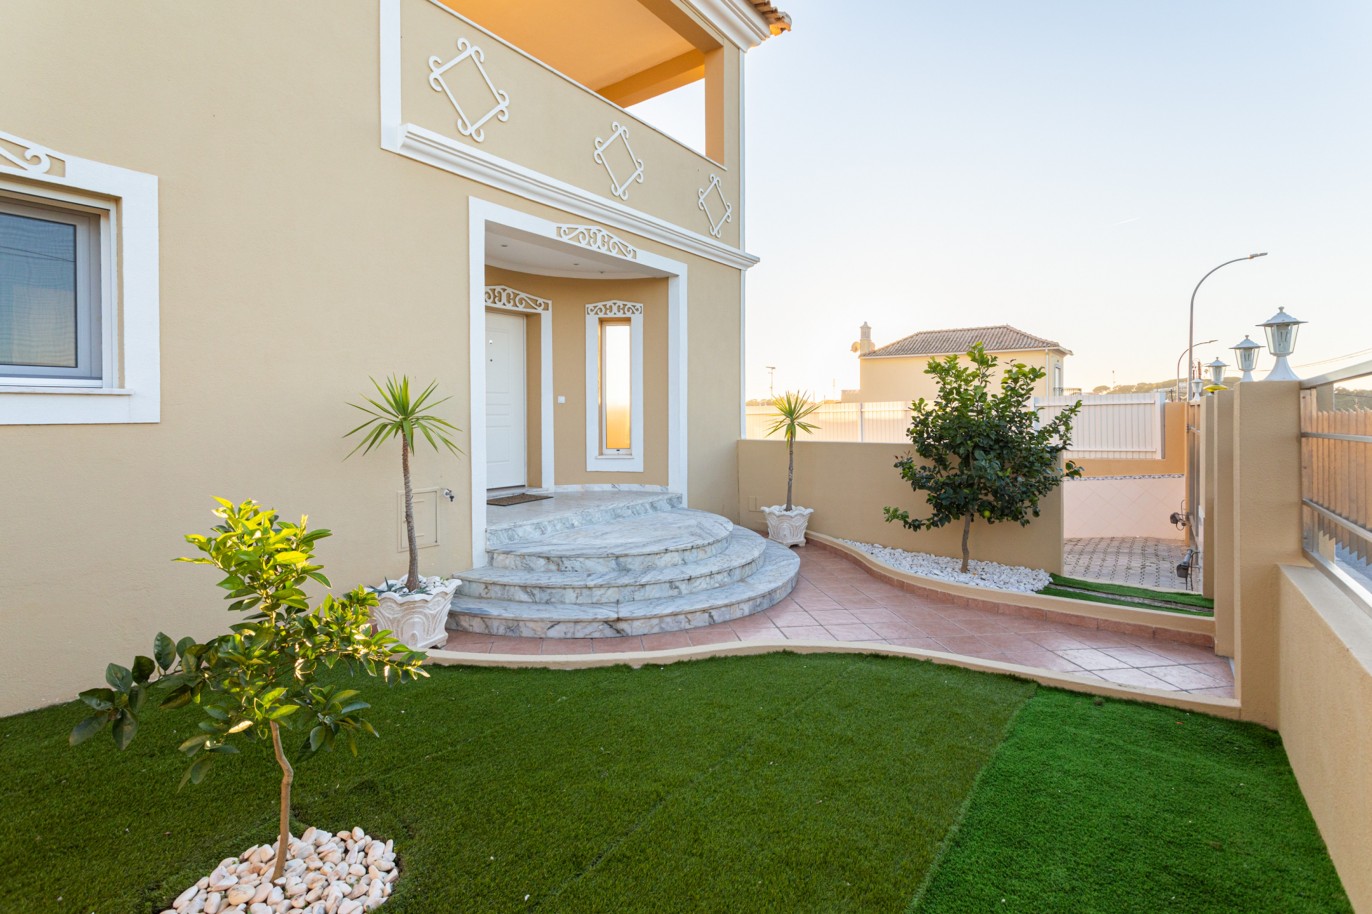 Villa de 4 dormitorios en zona de prestigio, en venta en Almancil, Algarve_217650